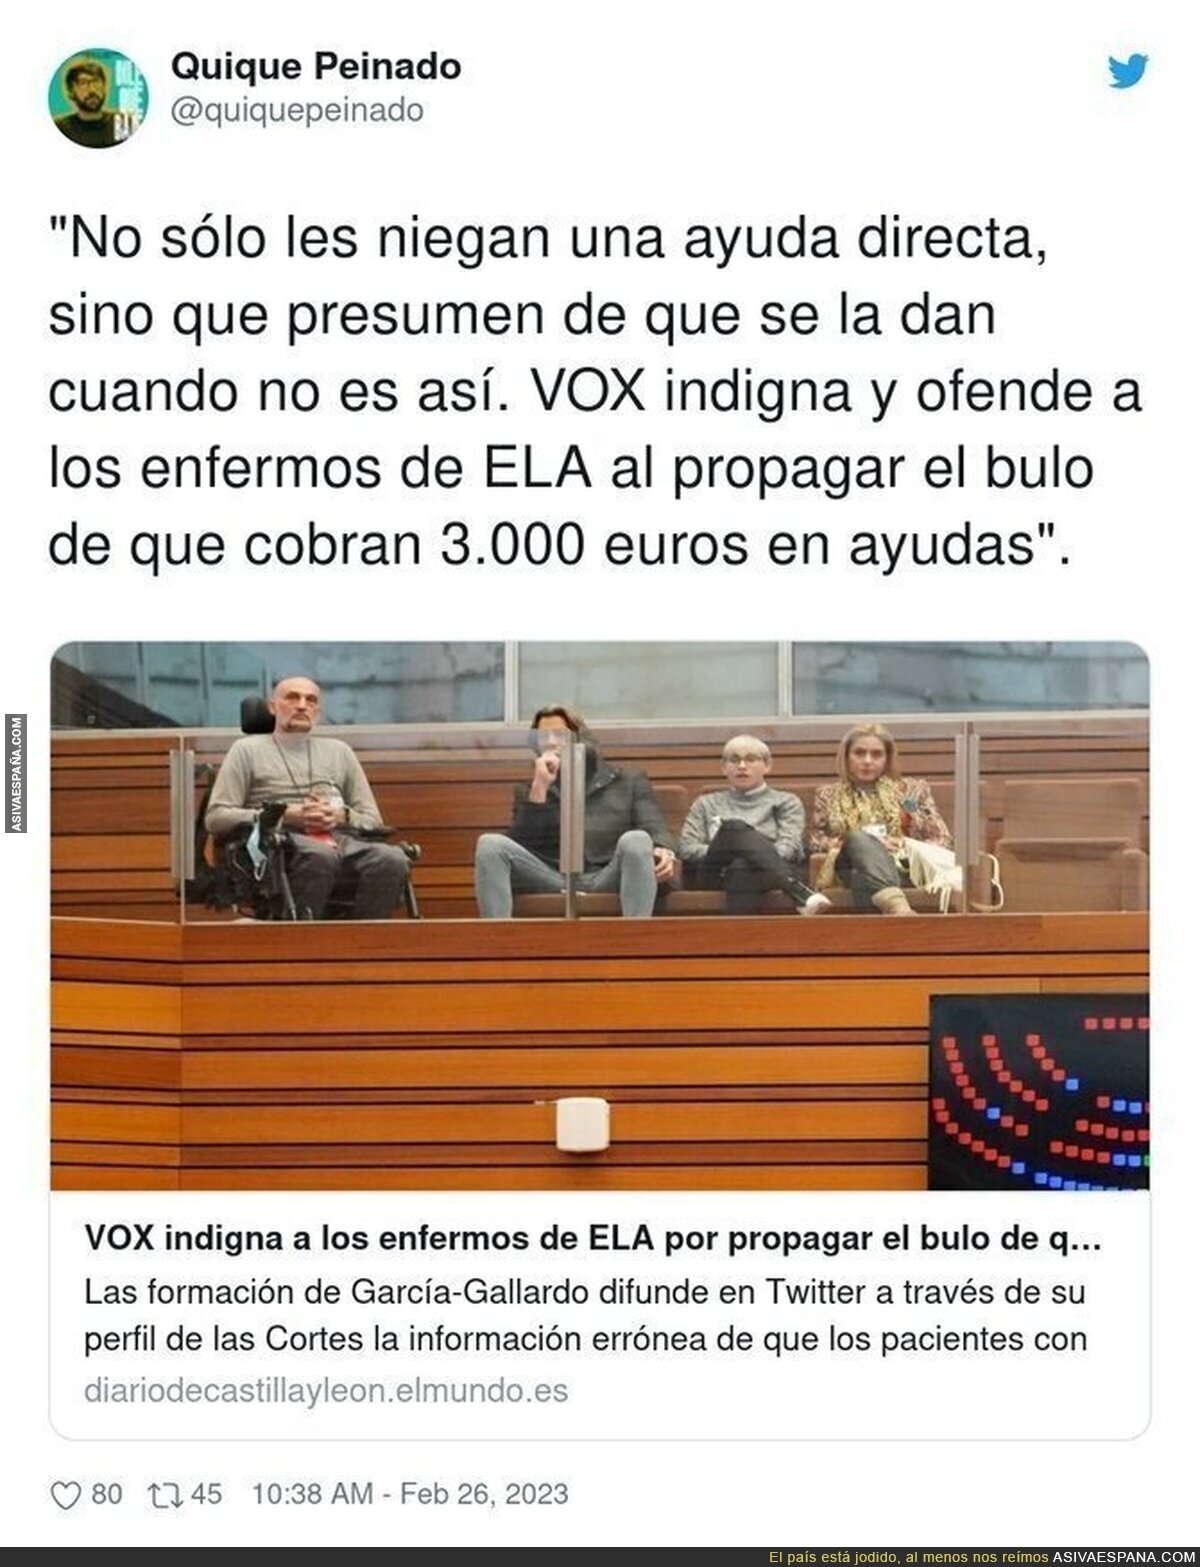 VOX ofende a los enfermos de ELA